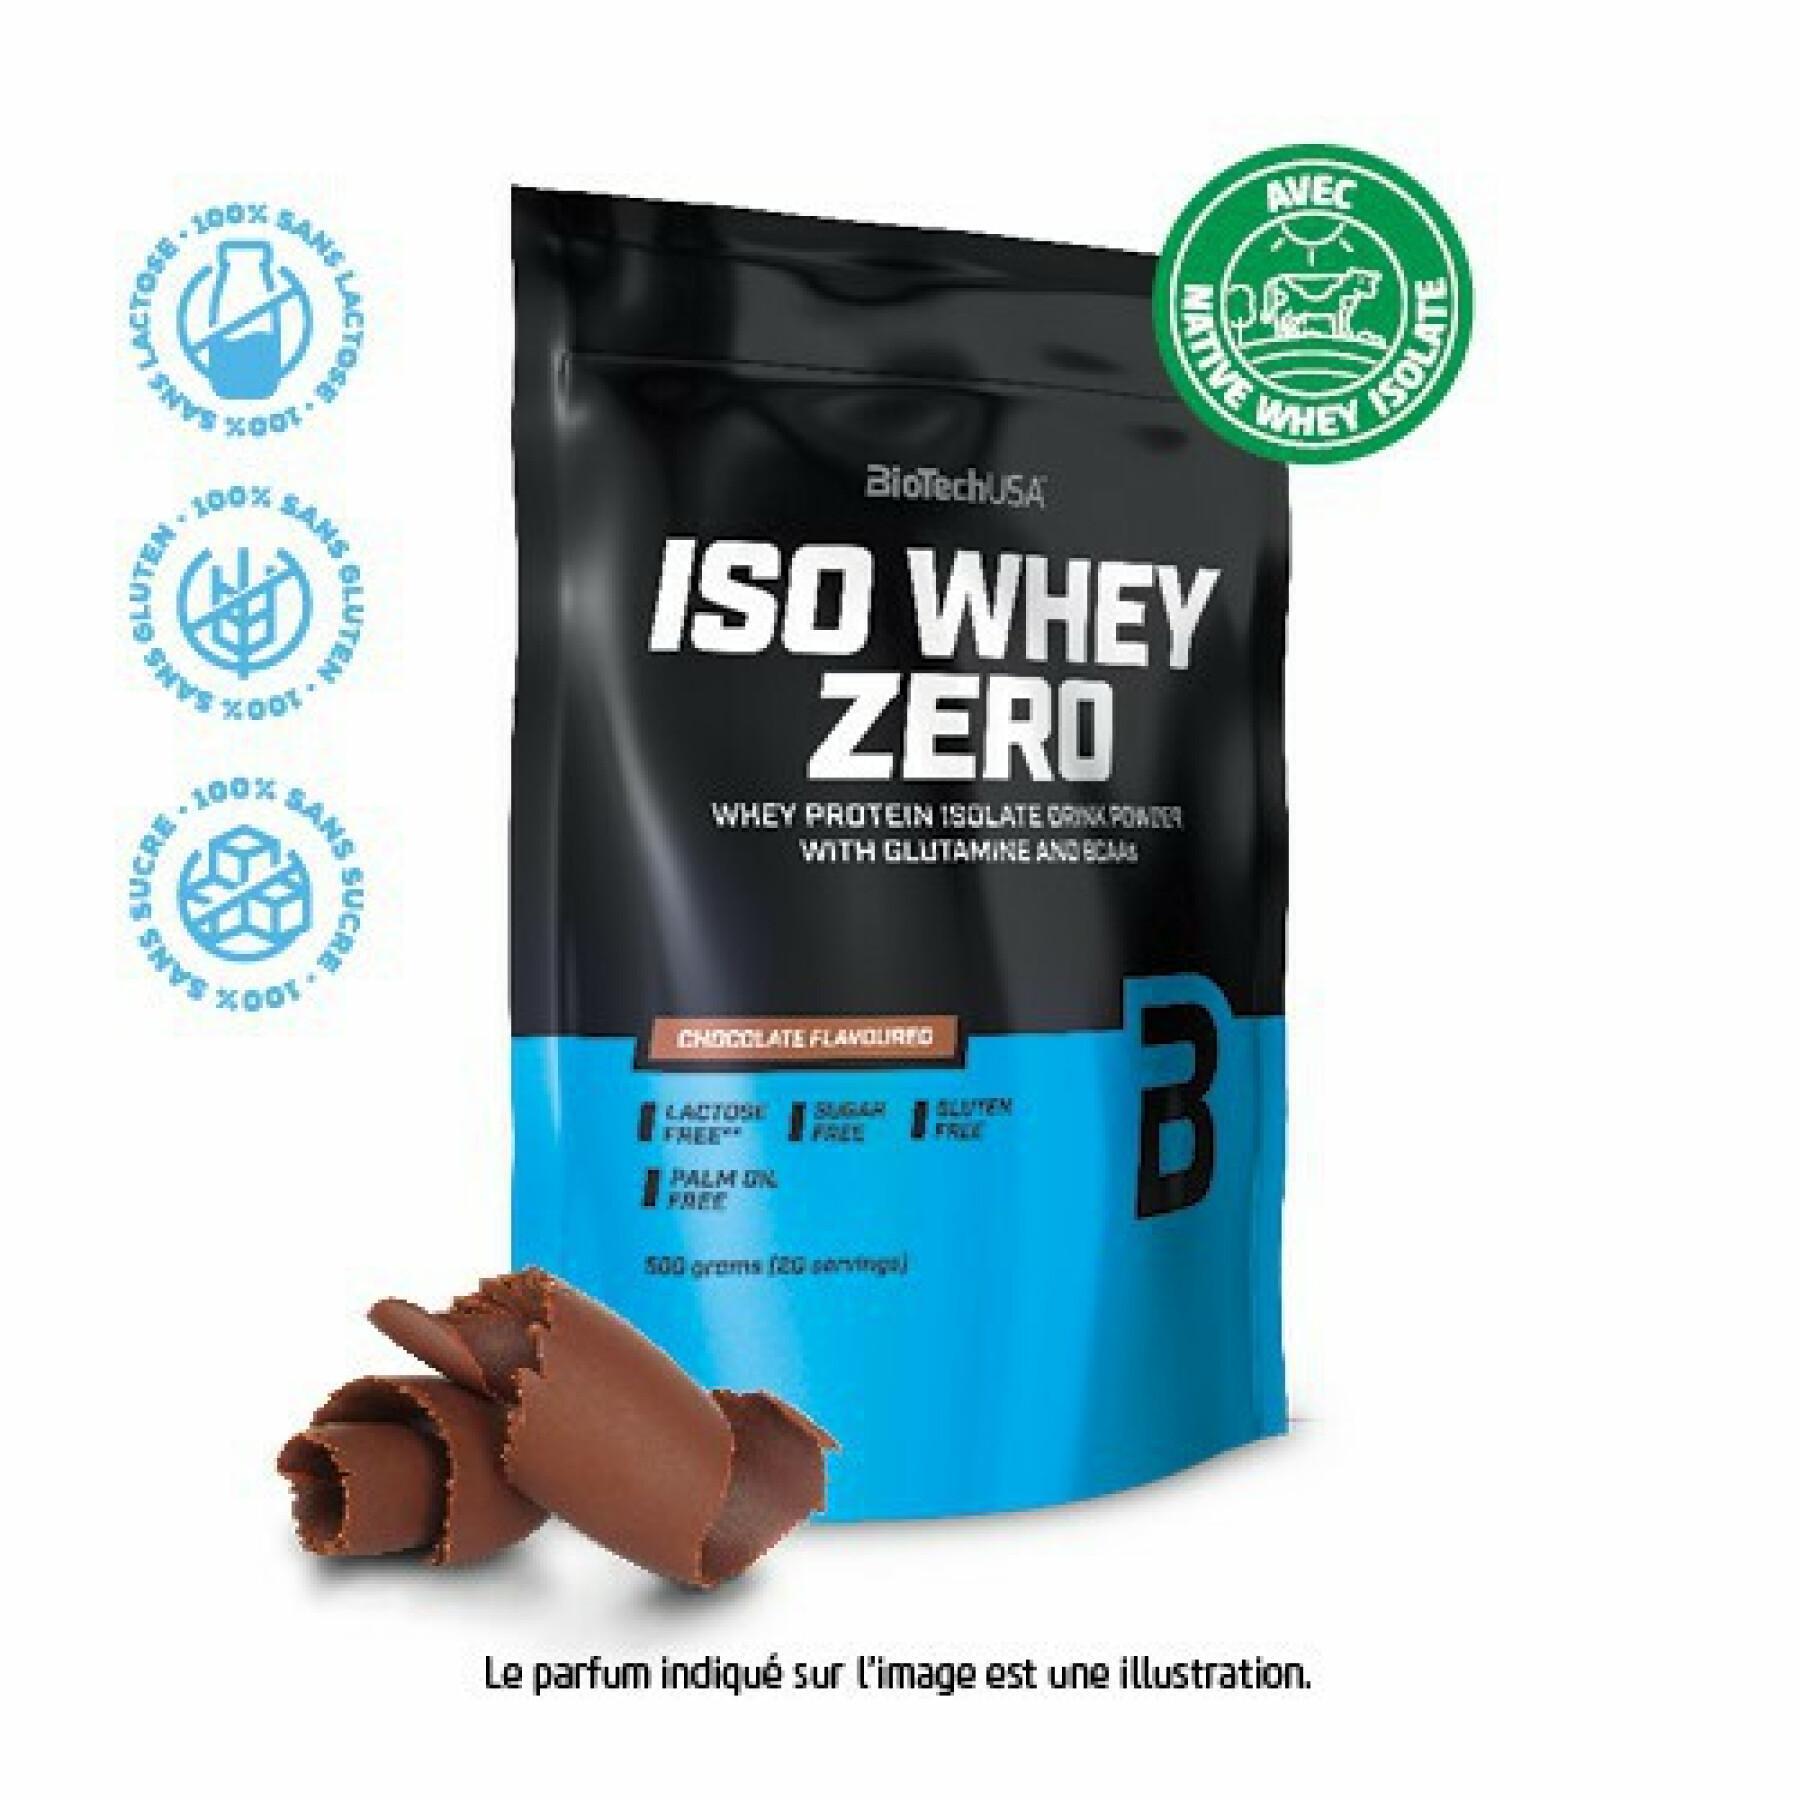 Paquete de 10 bolsas de proteínas Biotech USA iso whey zero lactose free - Chocolate - 500g